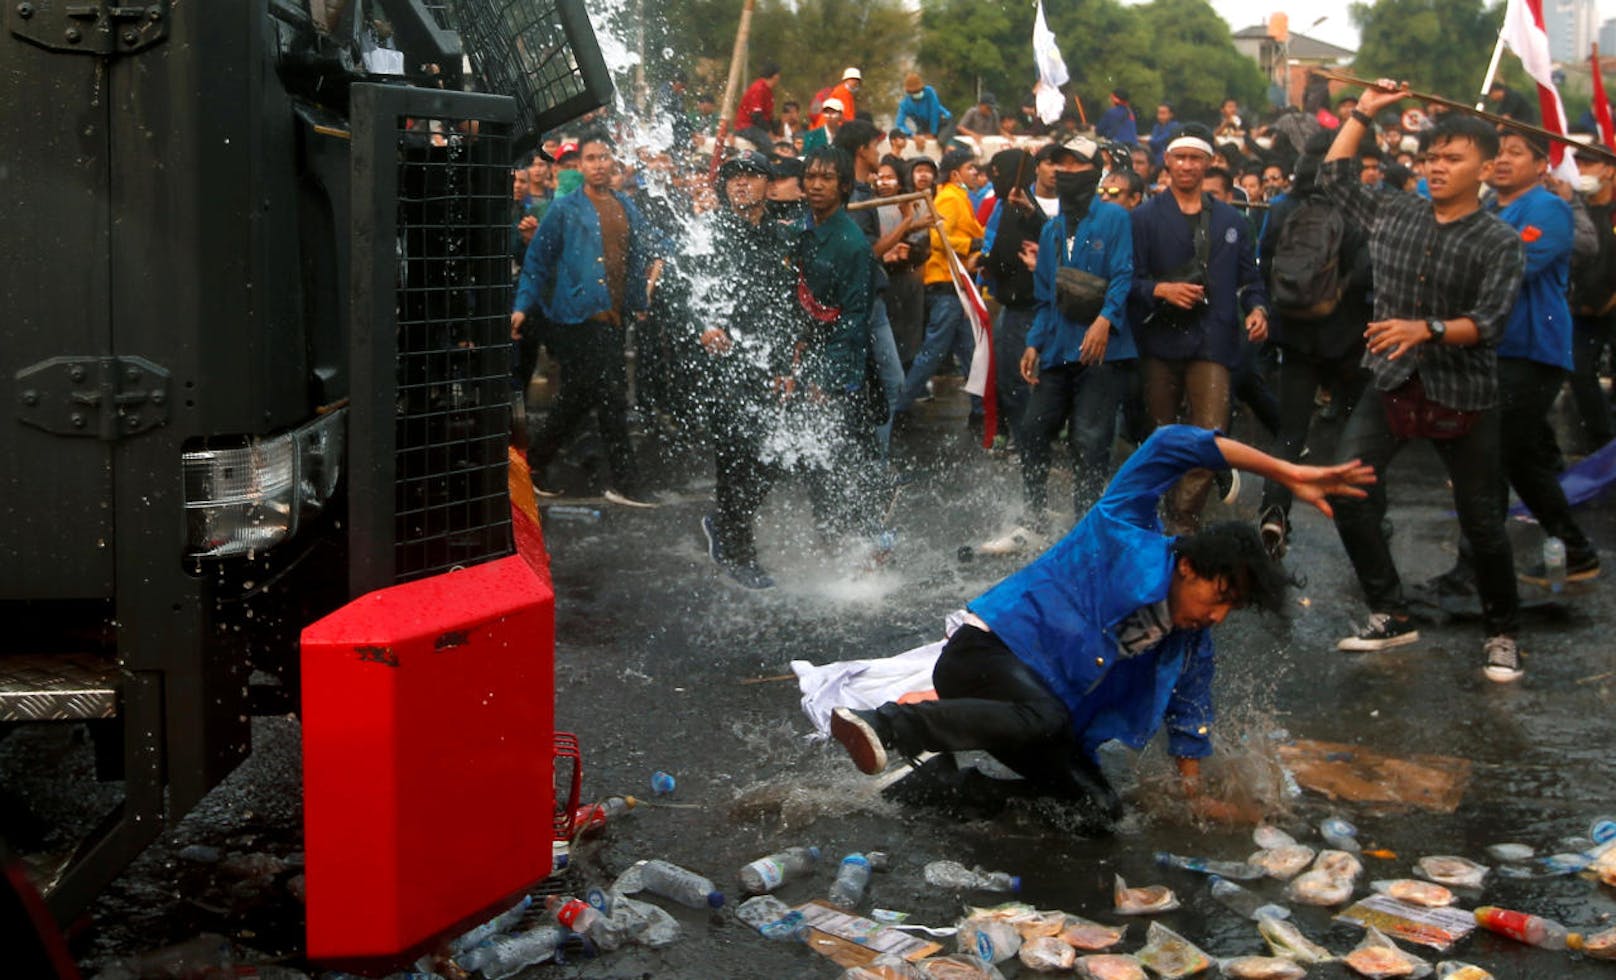 Tausende von Studenten demonstrierten in der indonesischen Hauptstadt Jakarta gegen die geplante Verschärfungen des Strafrechts. Diese orientieren sich zum Teil an der islamischen Scharia und sehen schwere Strafen unter anderem für Ehebruch und "Hexerei" vor. Die Polizei ging mit gepanzerten Fahrzeugen, Wasserwerfern und Tränengas gegen die Demonstranten vor.